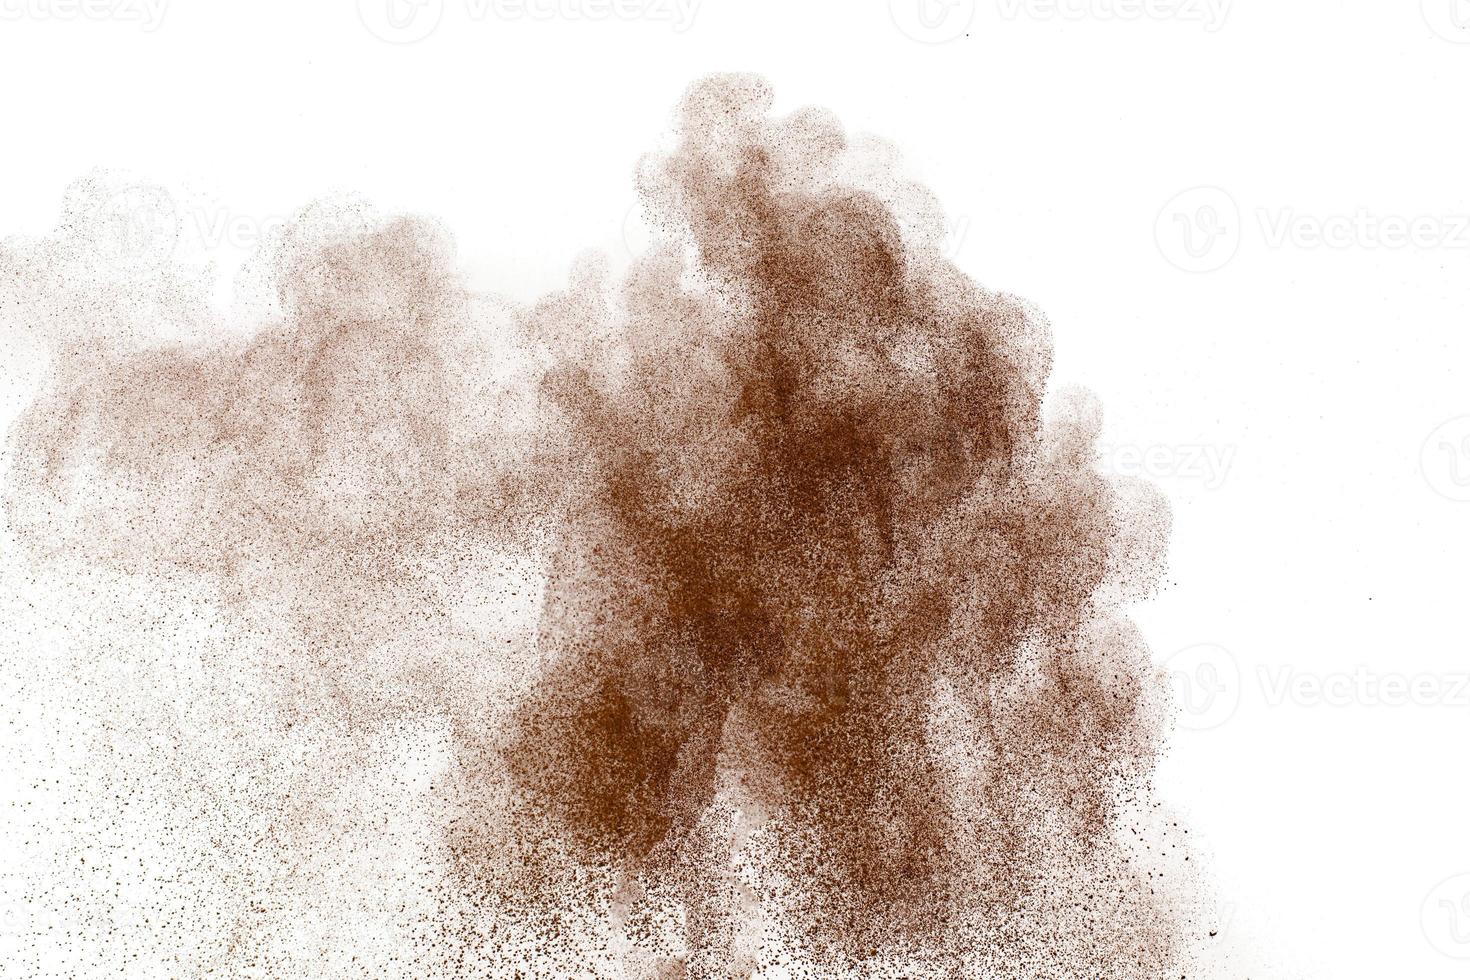 polvo marrón explotando cloud.brown partículas salpicadas sobre fondo blanco. foto